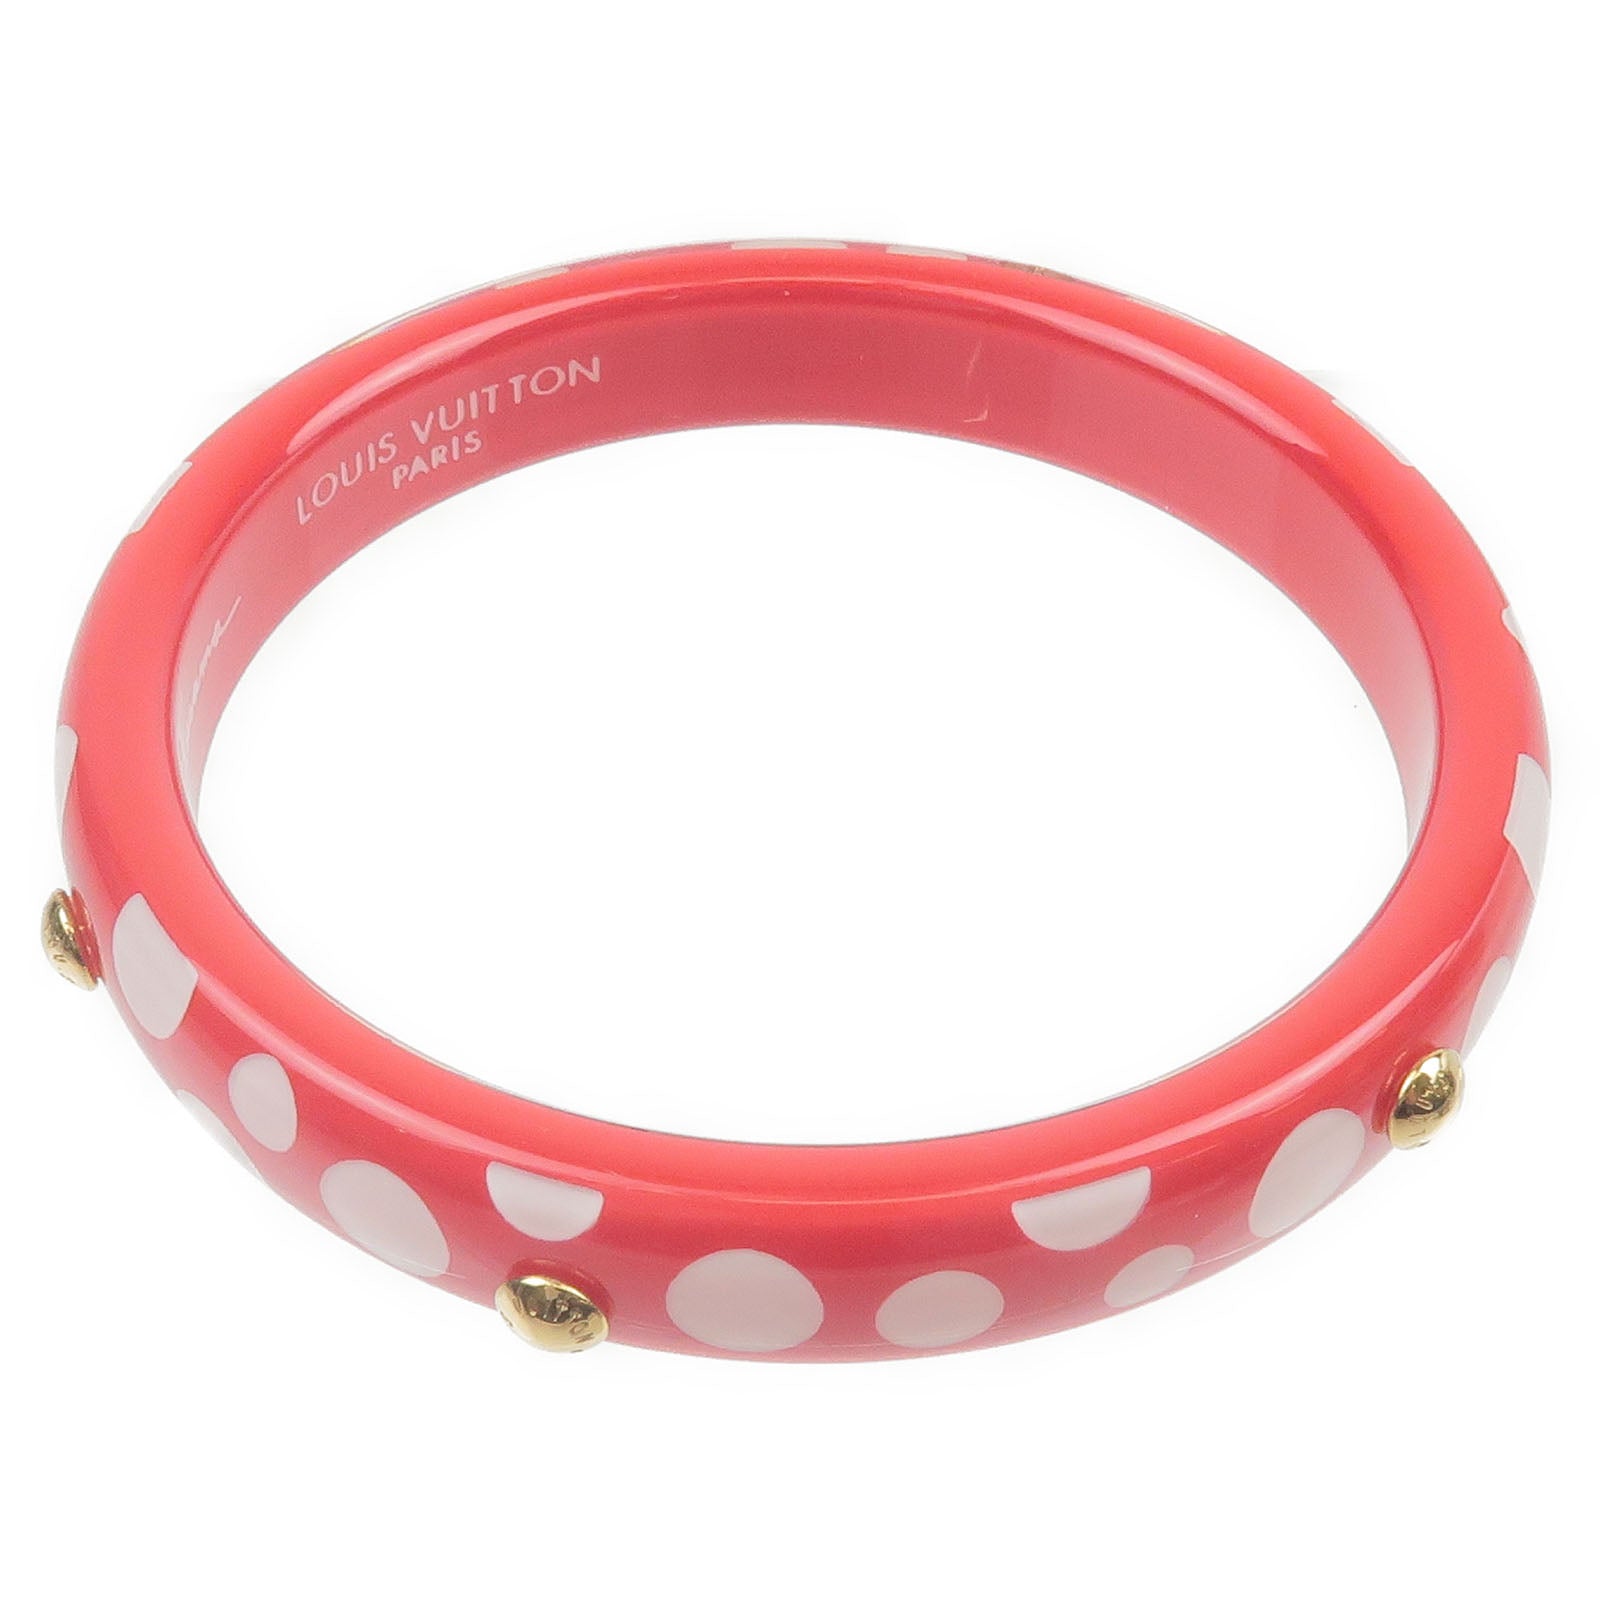 Louis-Vuitton-Yayoi-Kusama-Bracelet-Dot-Infinity-PM-Rouge-M66684